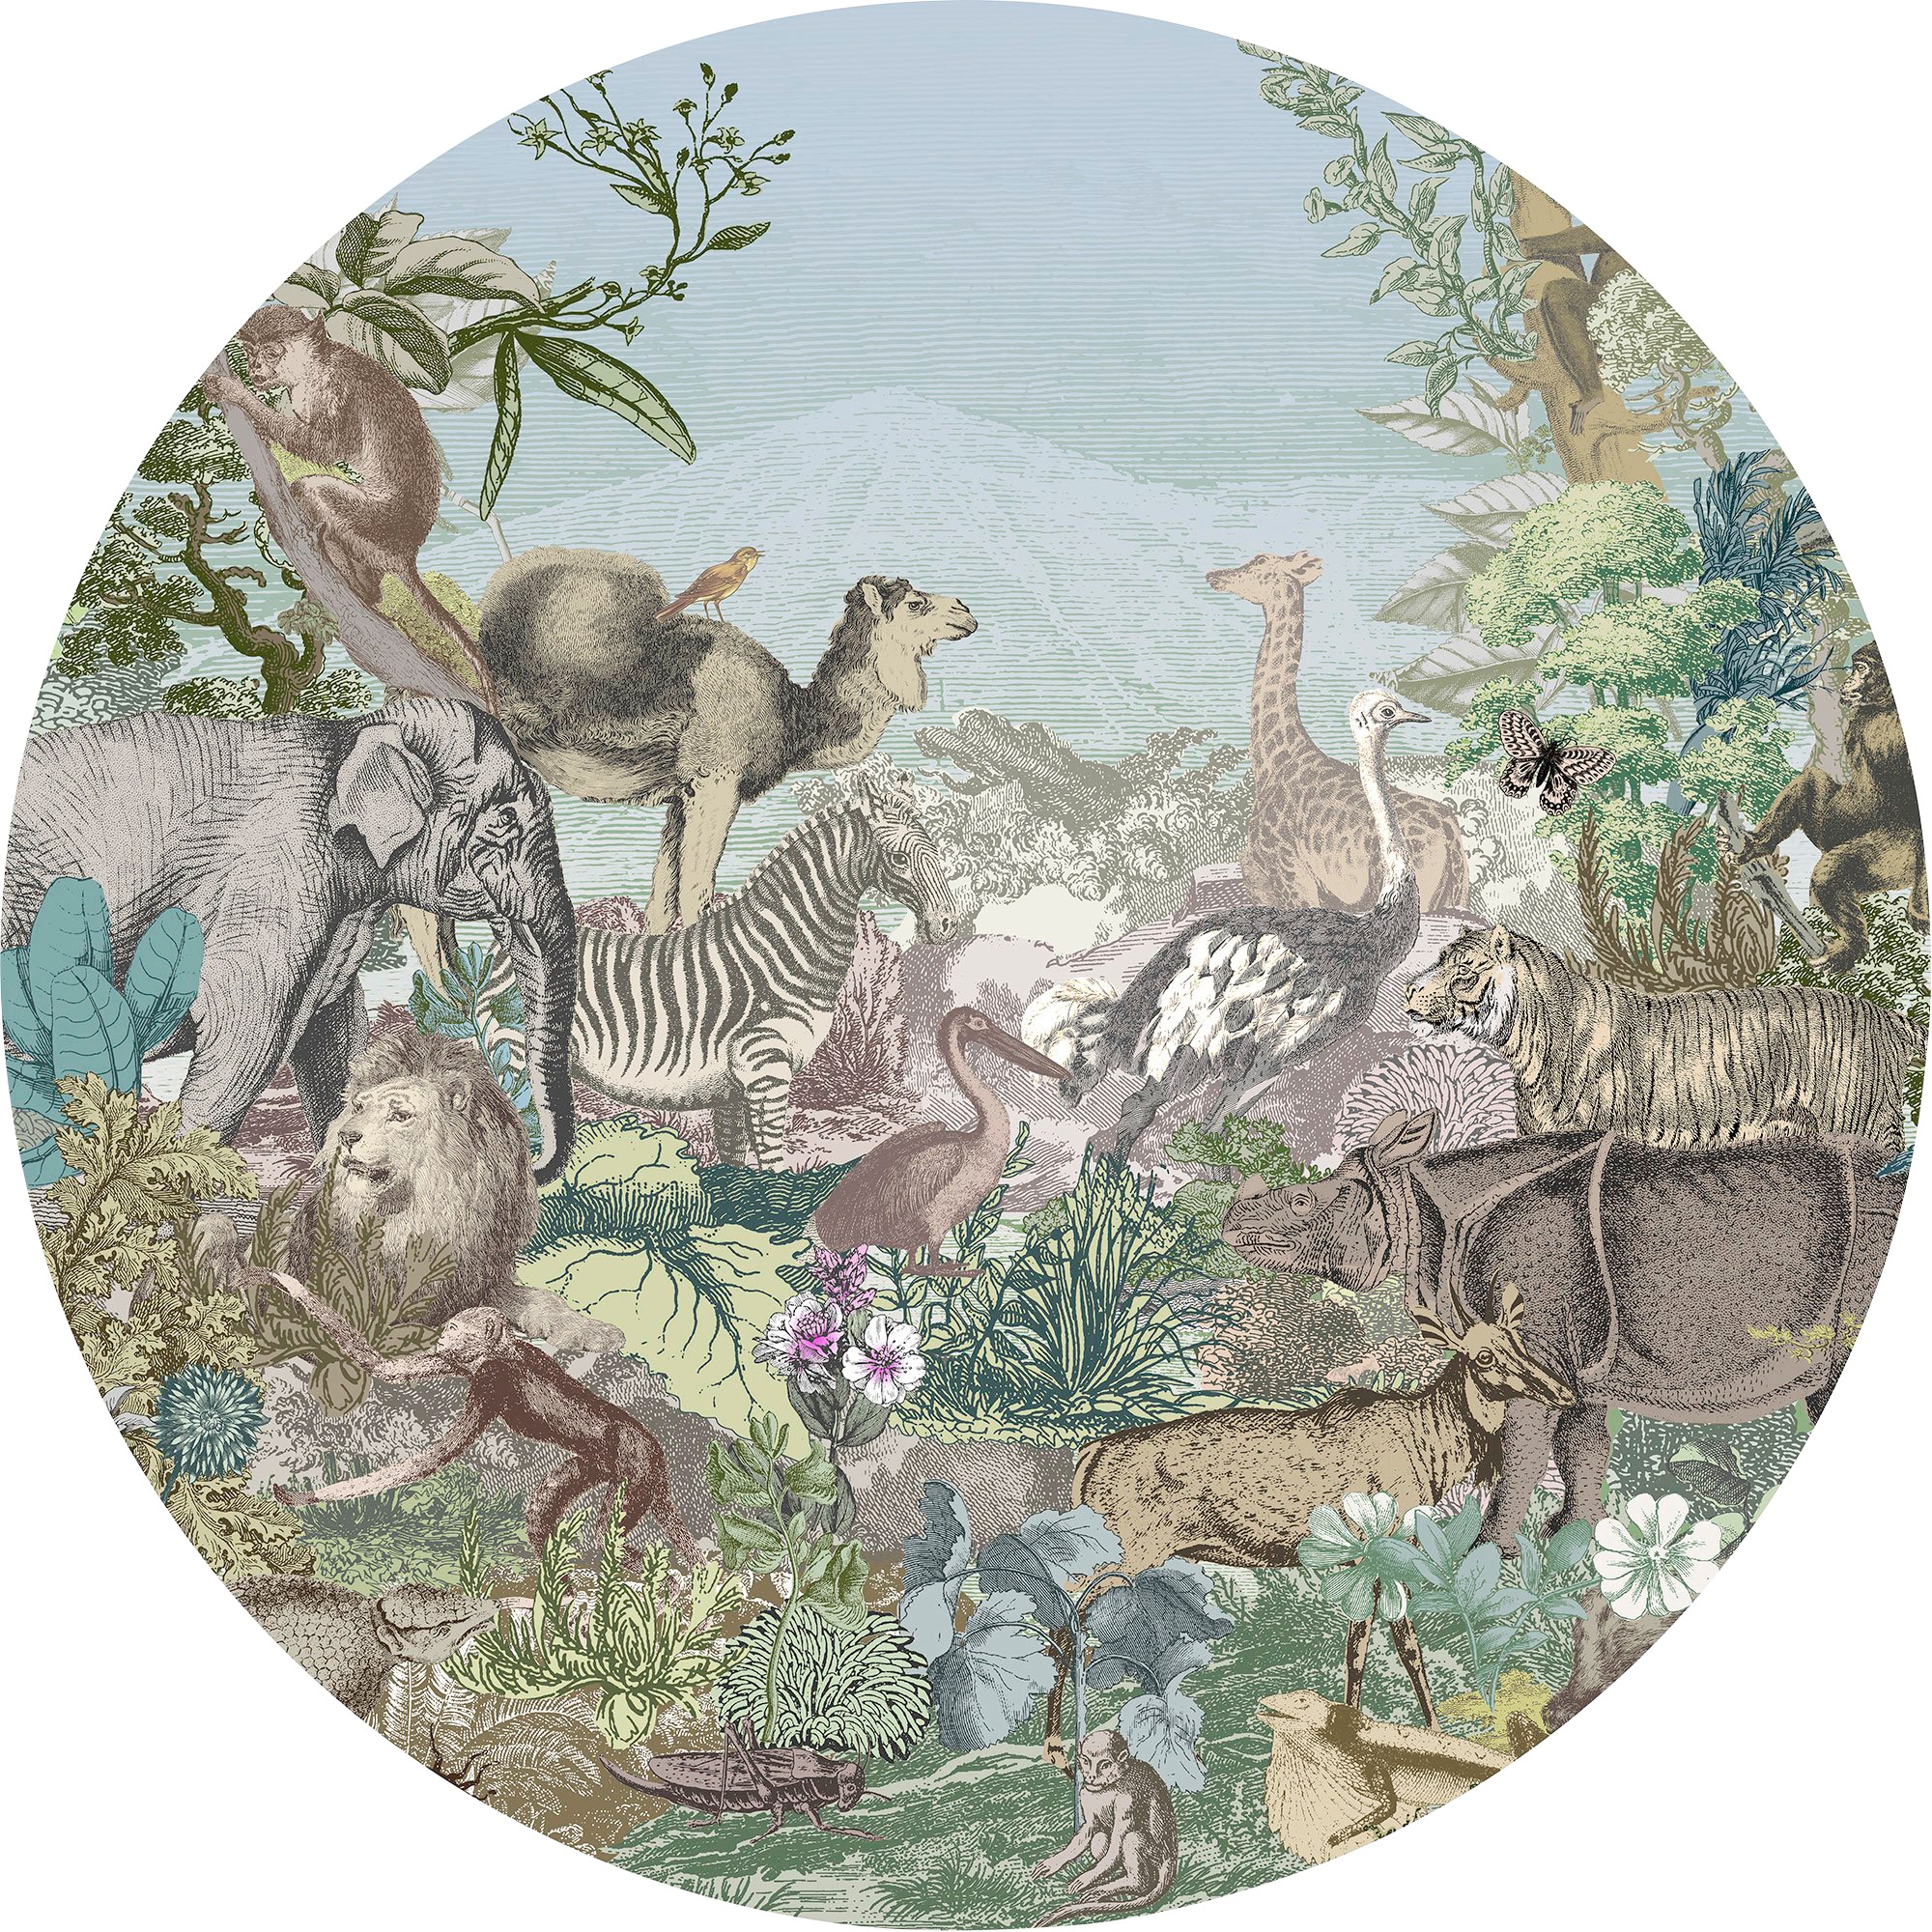 Fototapete »Animal Kingdom«, 125x125 cm (Breite x Höhe), rund und selbstklebend